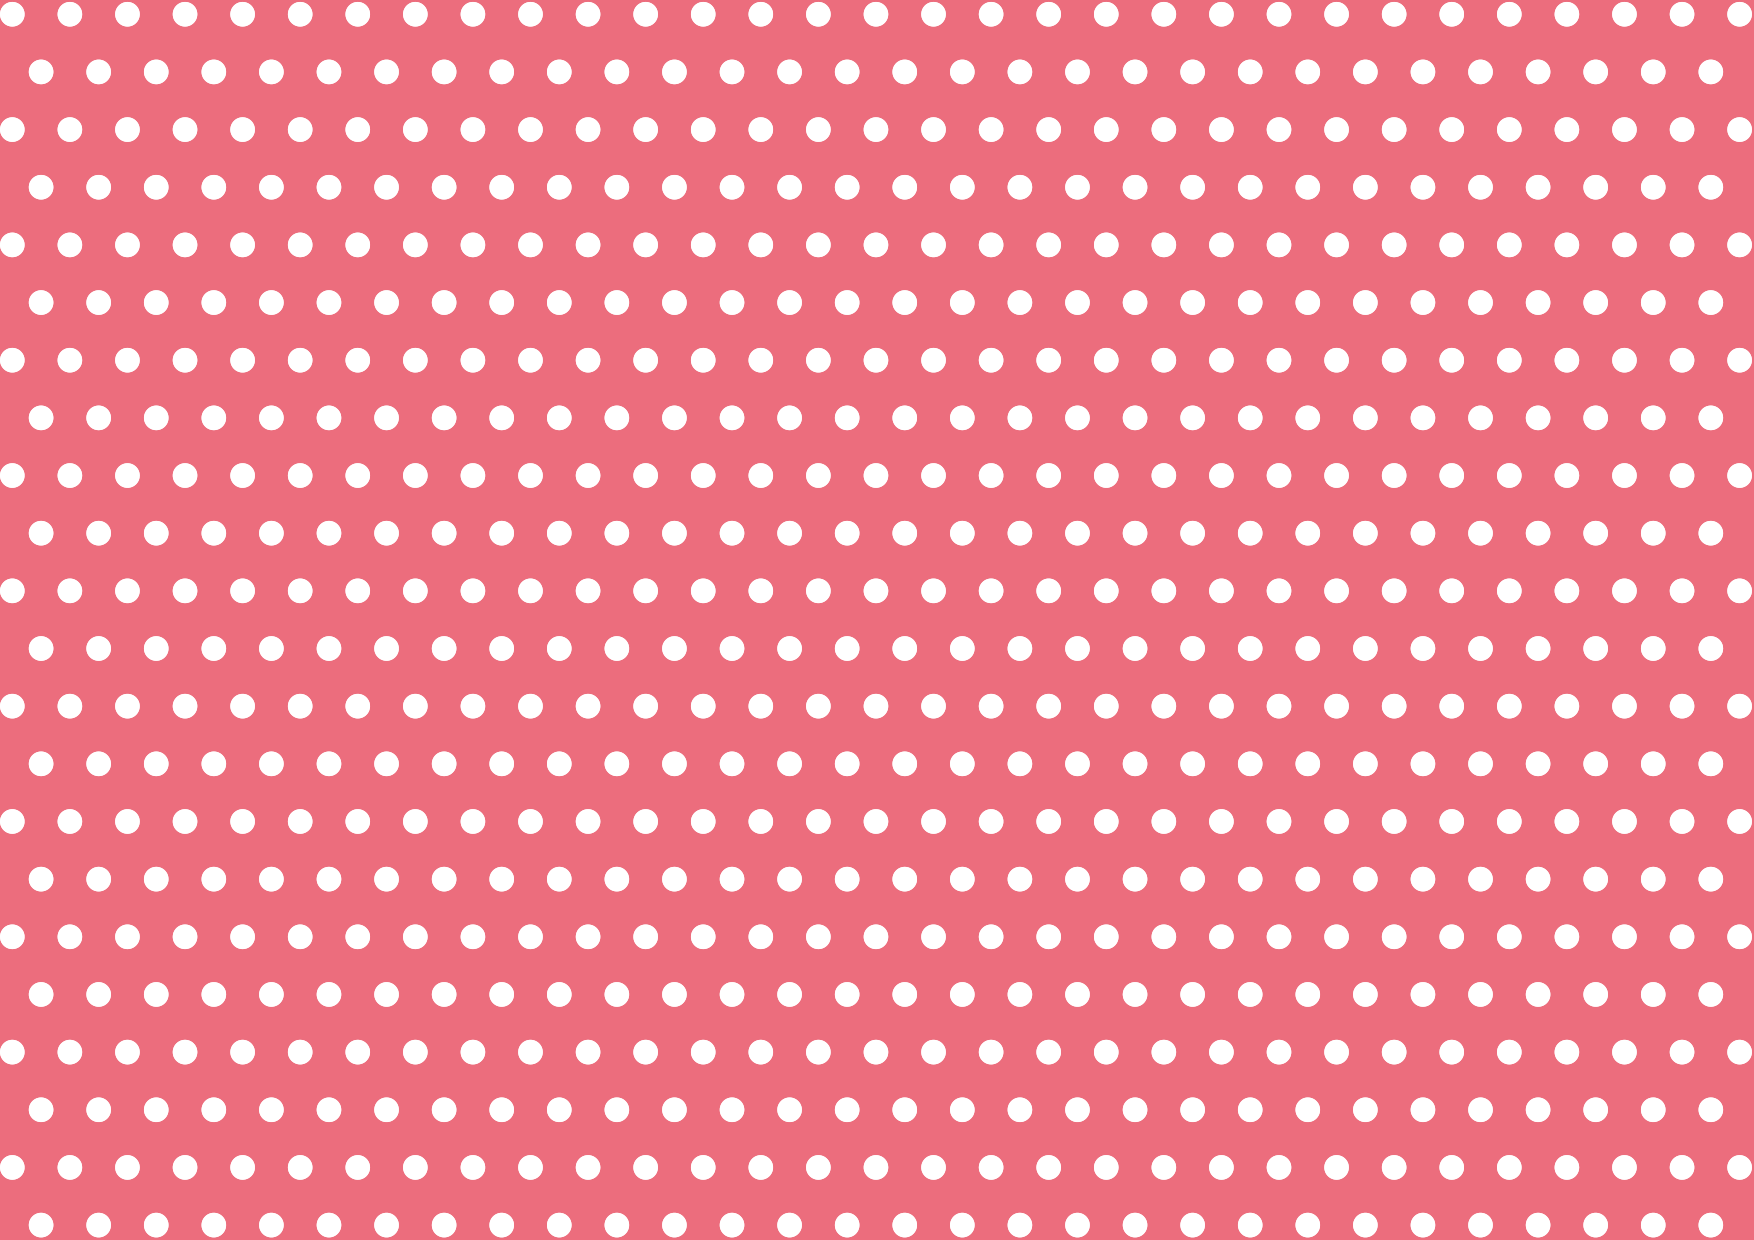 可愛いイラスト無料 水玉 ピンク色 背景 公式 イラスト素材サイト イラストダウンロード